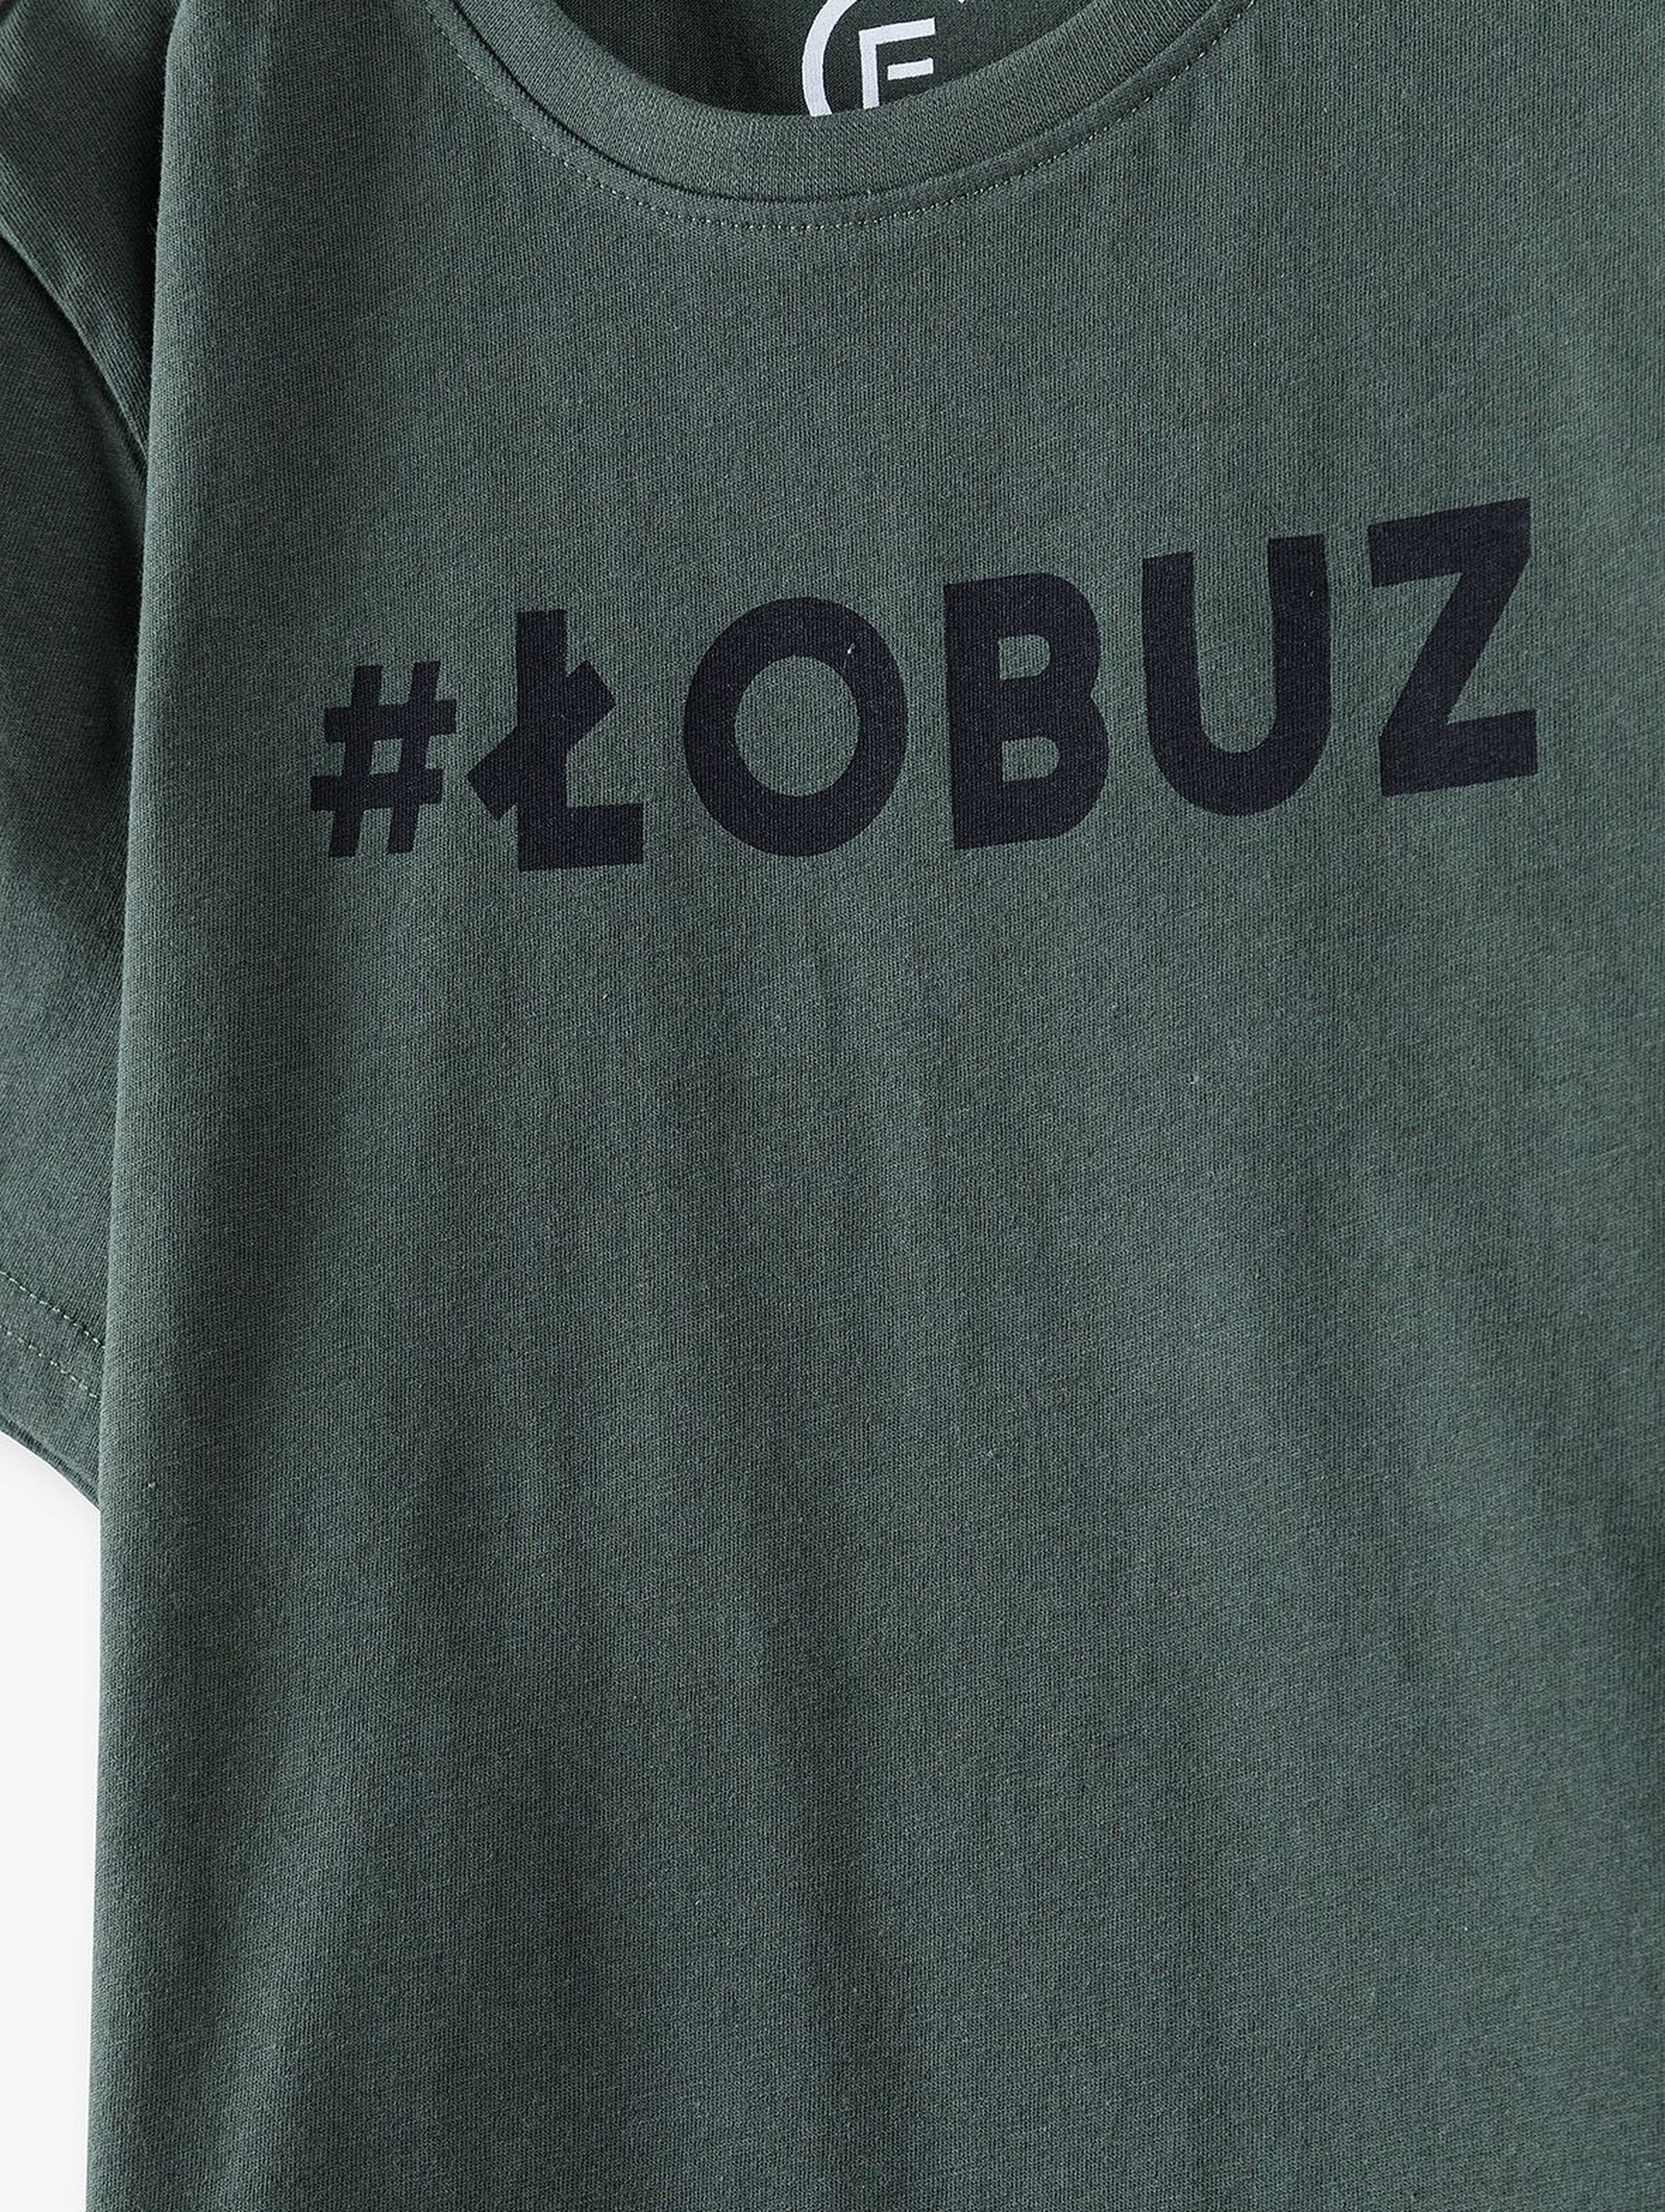 Bawełniany t-shirt męski- Łobuz